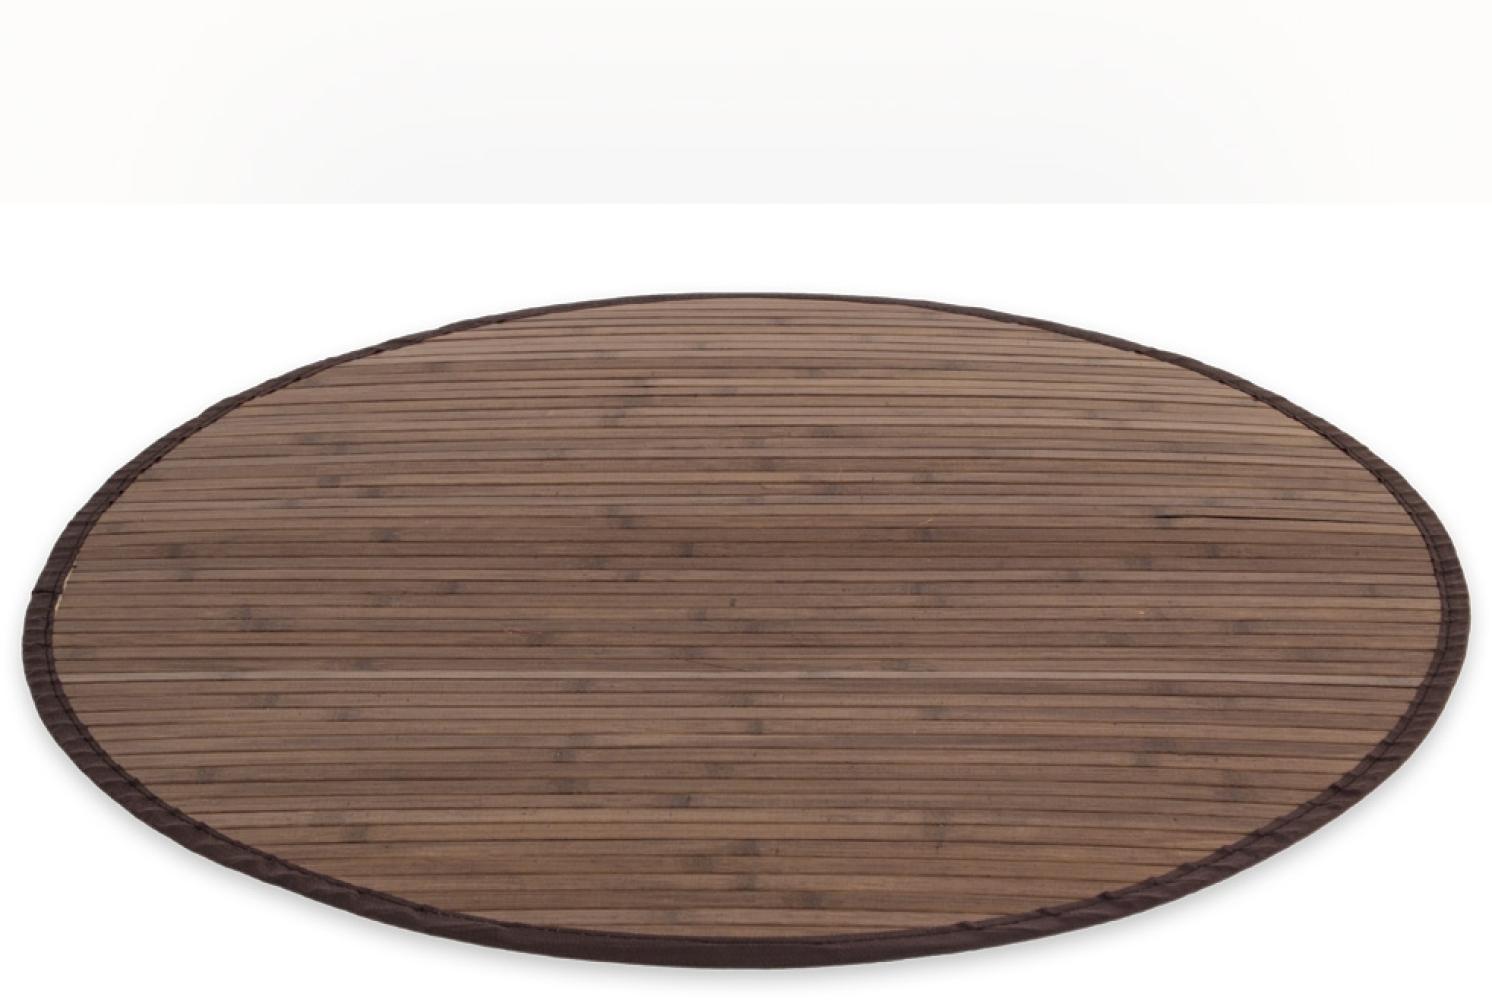 Homestyle4u Teppich, rund, Bambus dunkelbraun, Ø 180 cm Bild 1